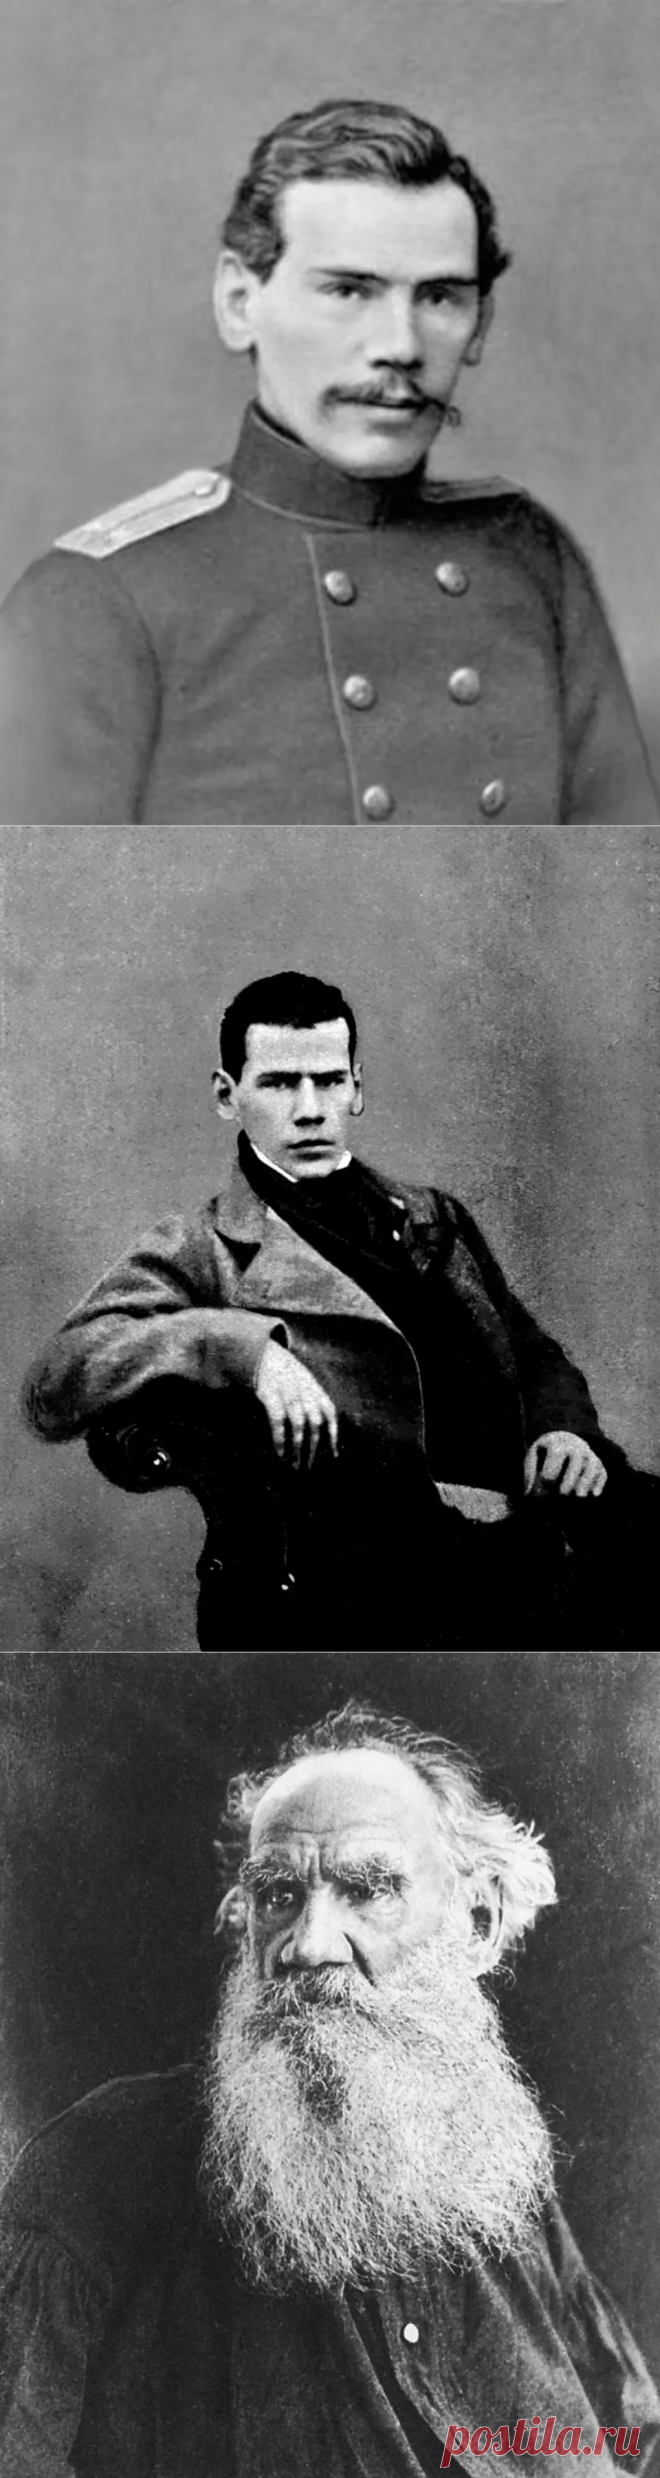 Толстой Лев Николаевич — биография писателя, личная жизнь, фото, портреты, книги